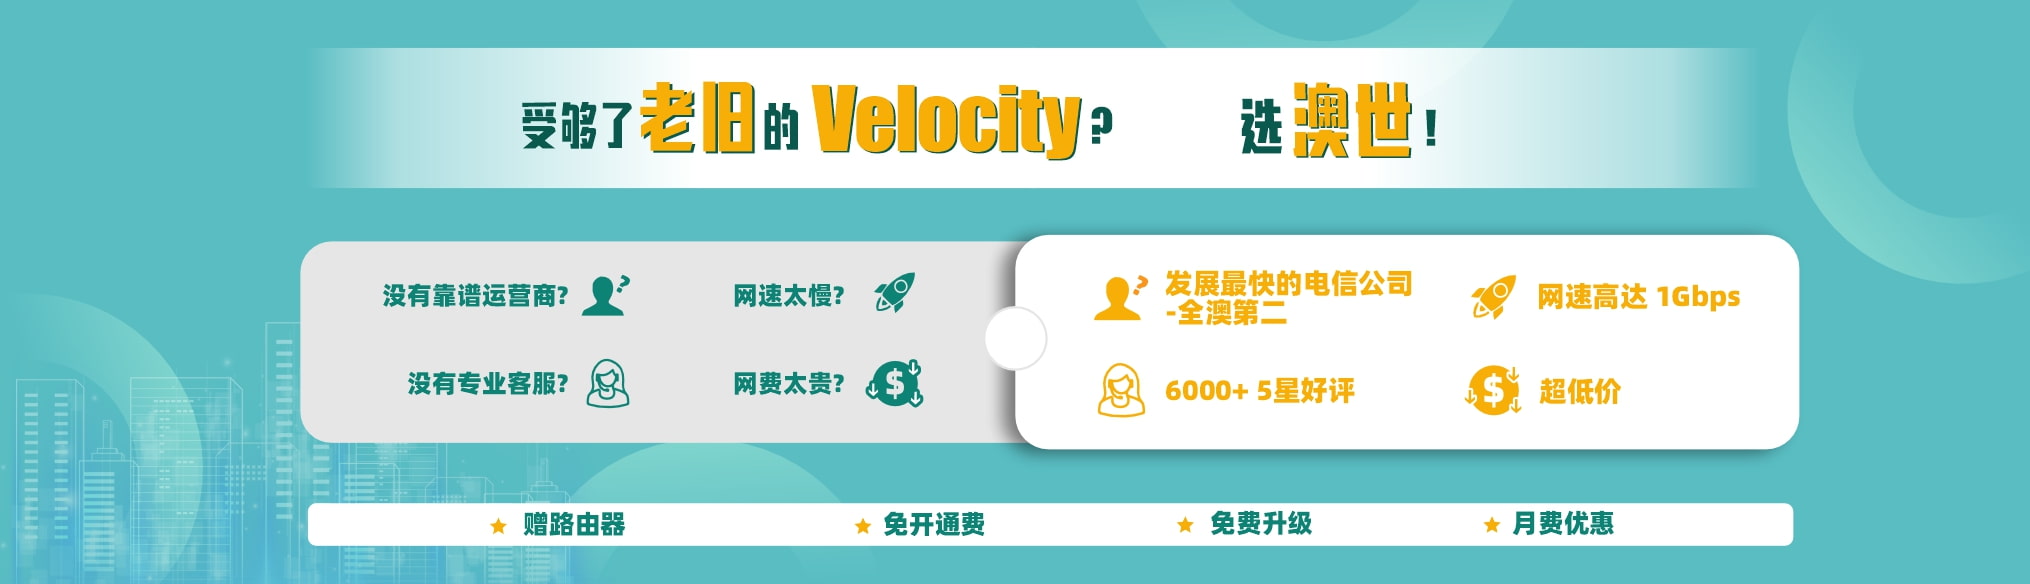 velocity promotion